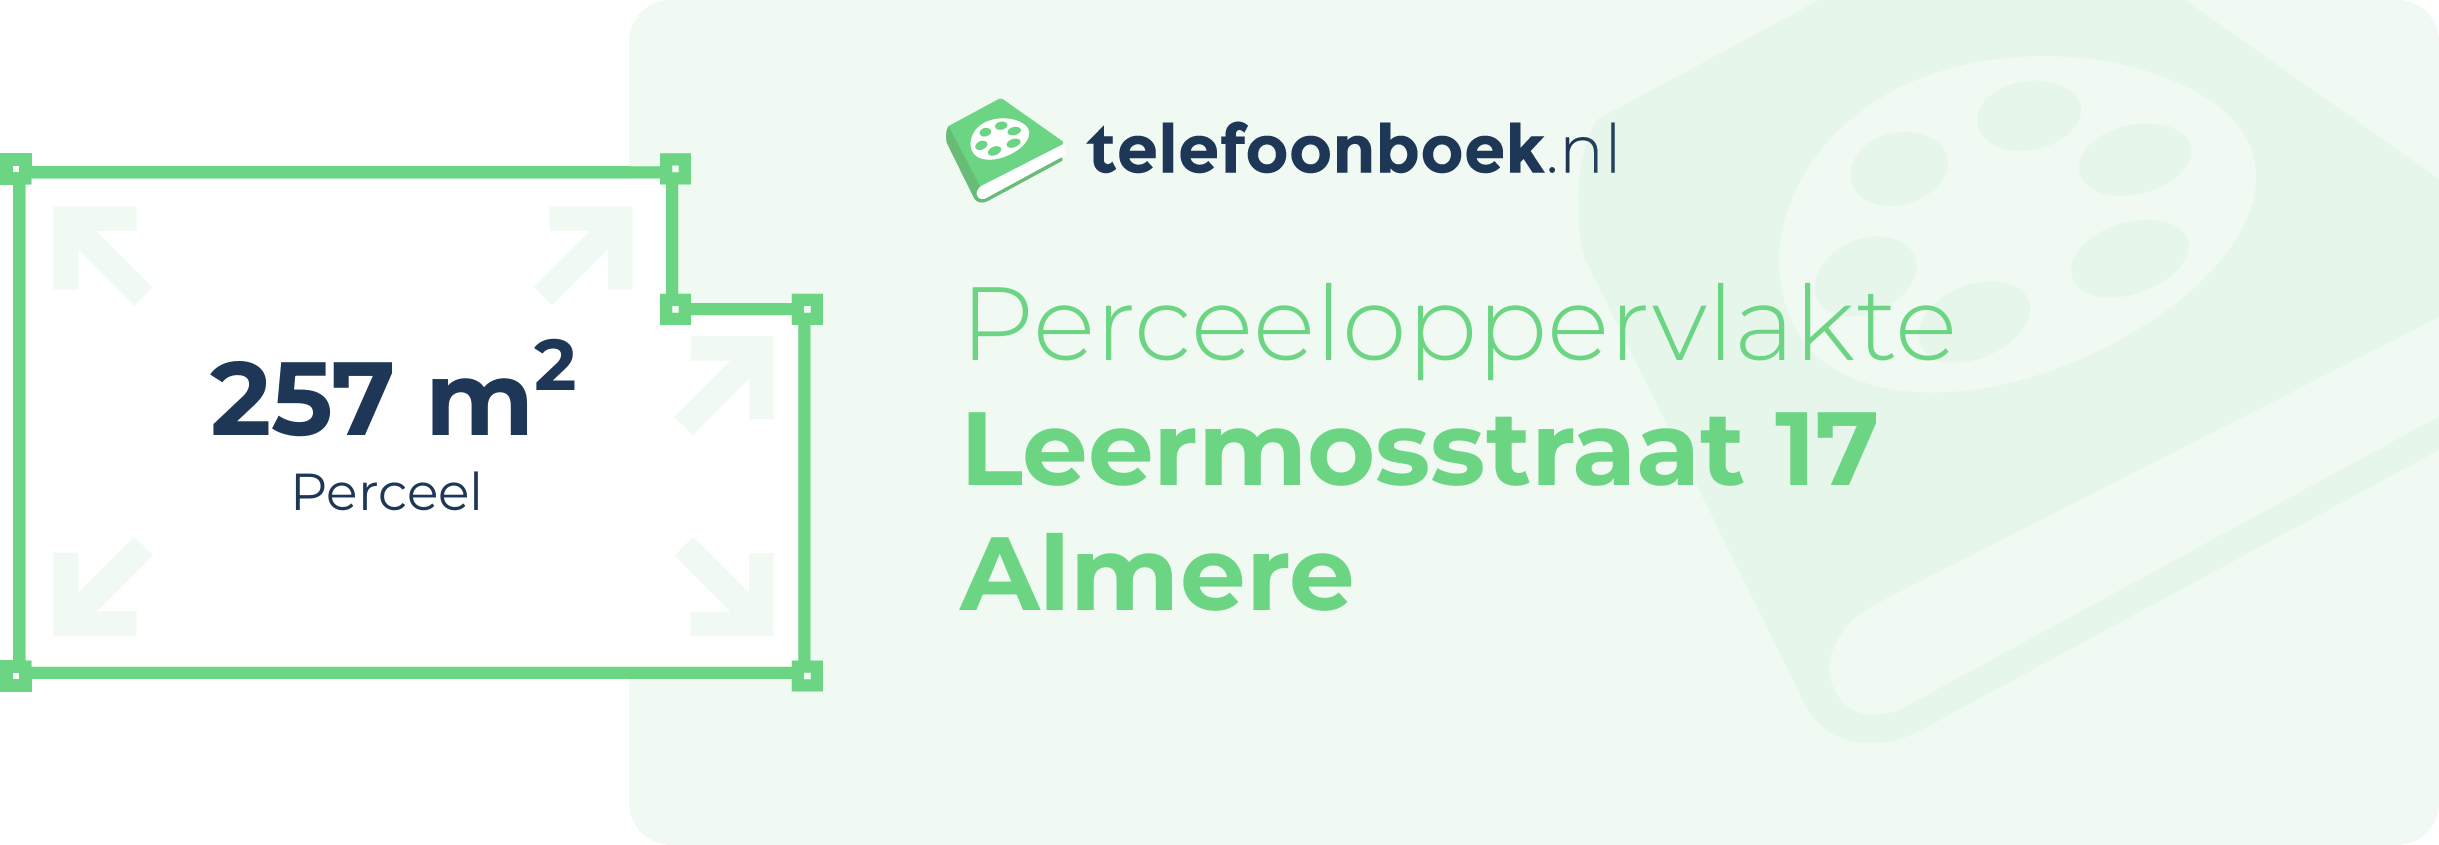 Perceeloppervlakte Leermosstraat 17 Almere